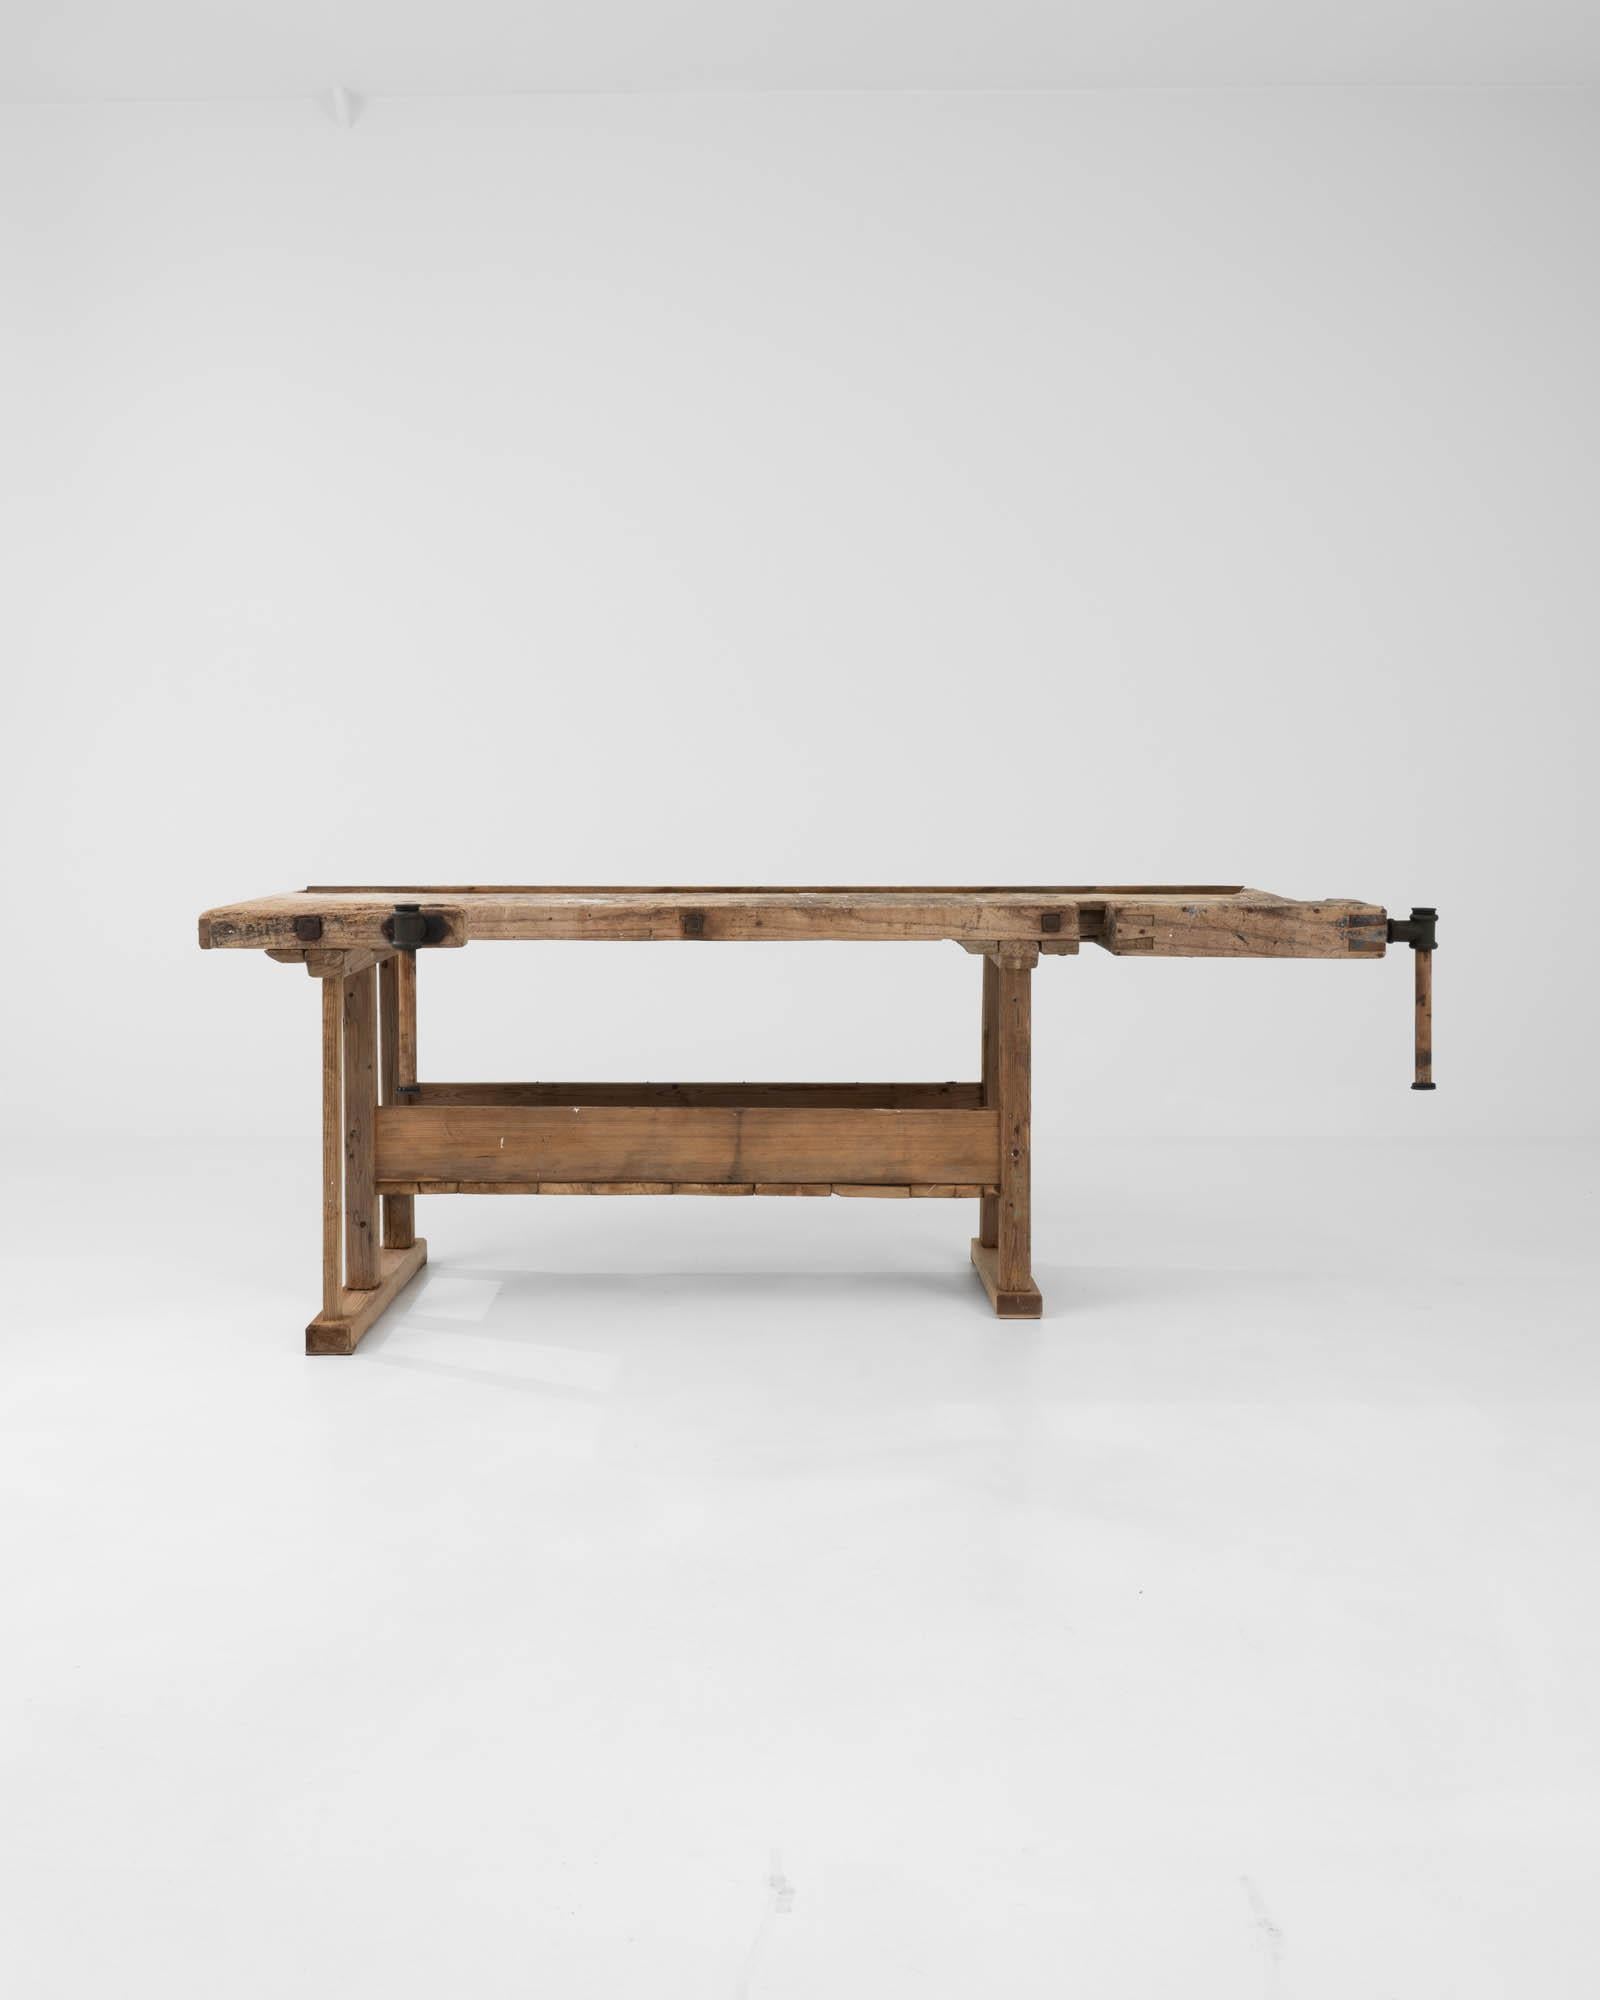 Avec son design artisanal et sa finition naturelle chaleureuse, cette table en bois vintage constitue un accent industriel saisissant. Construite en Belgique au XXe siècle, cette pièce devait à l'origine servir d'établi de menuisier. Les